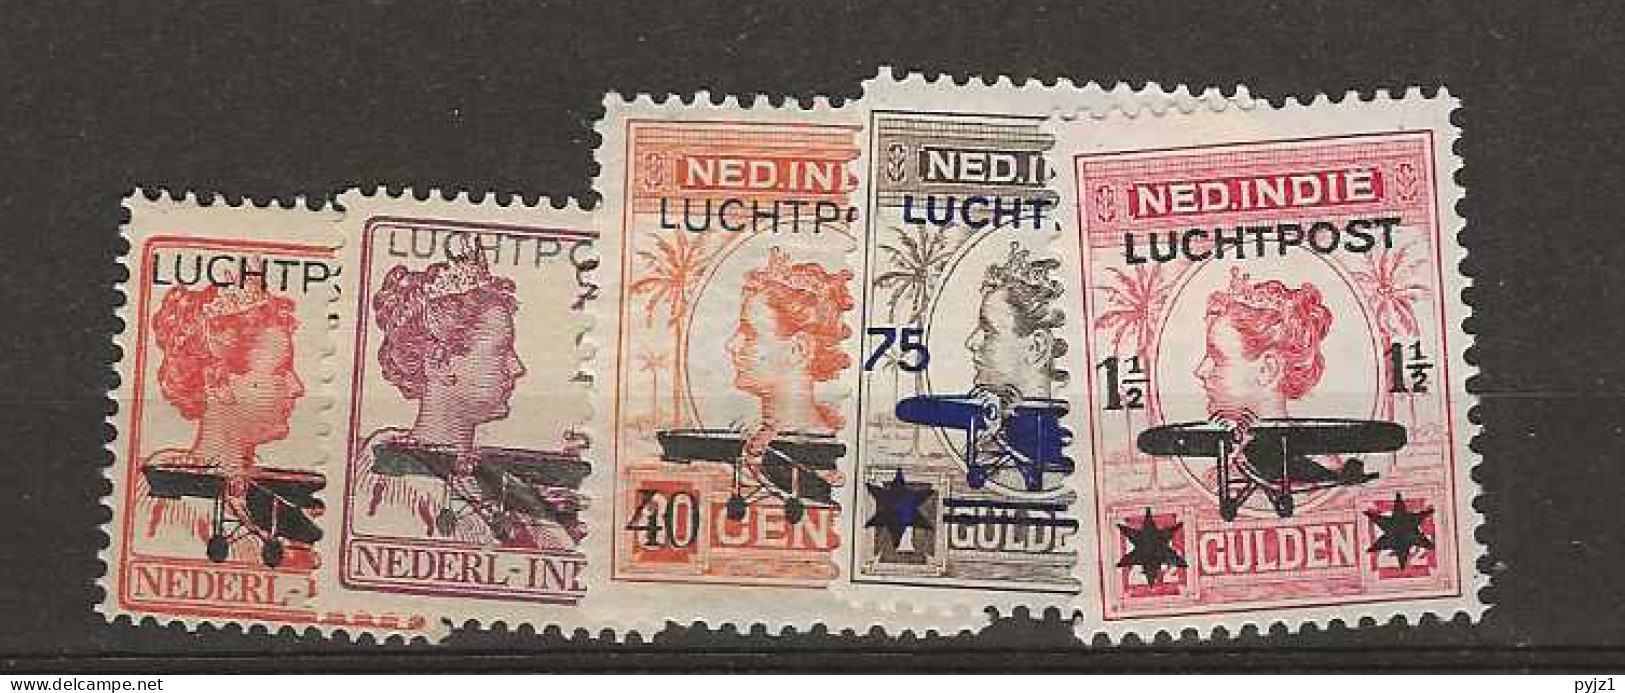 1928 MH Nederlands Indië Airmail NVPH LP 1-5 - Niederländisch-Indien